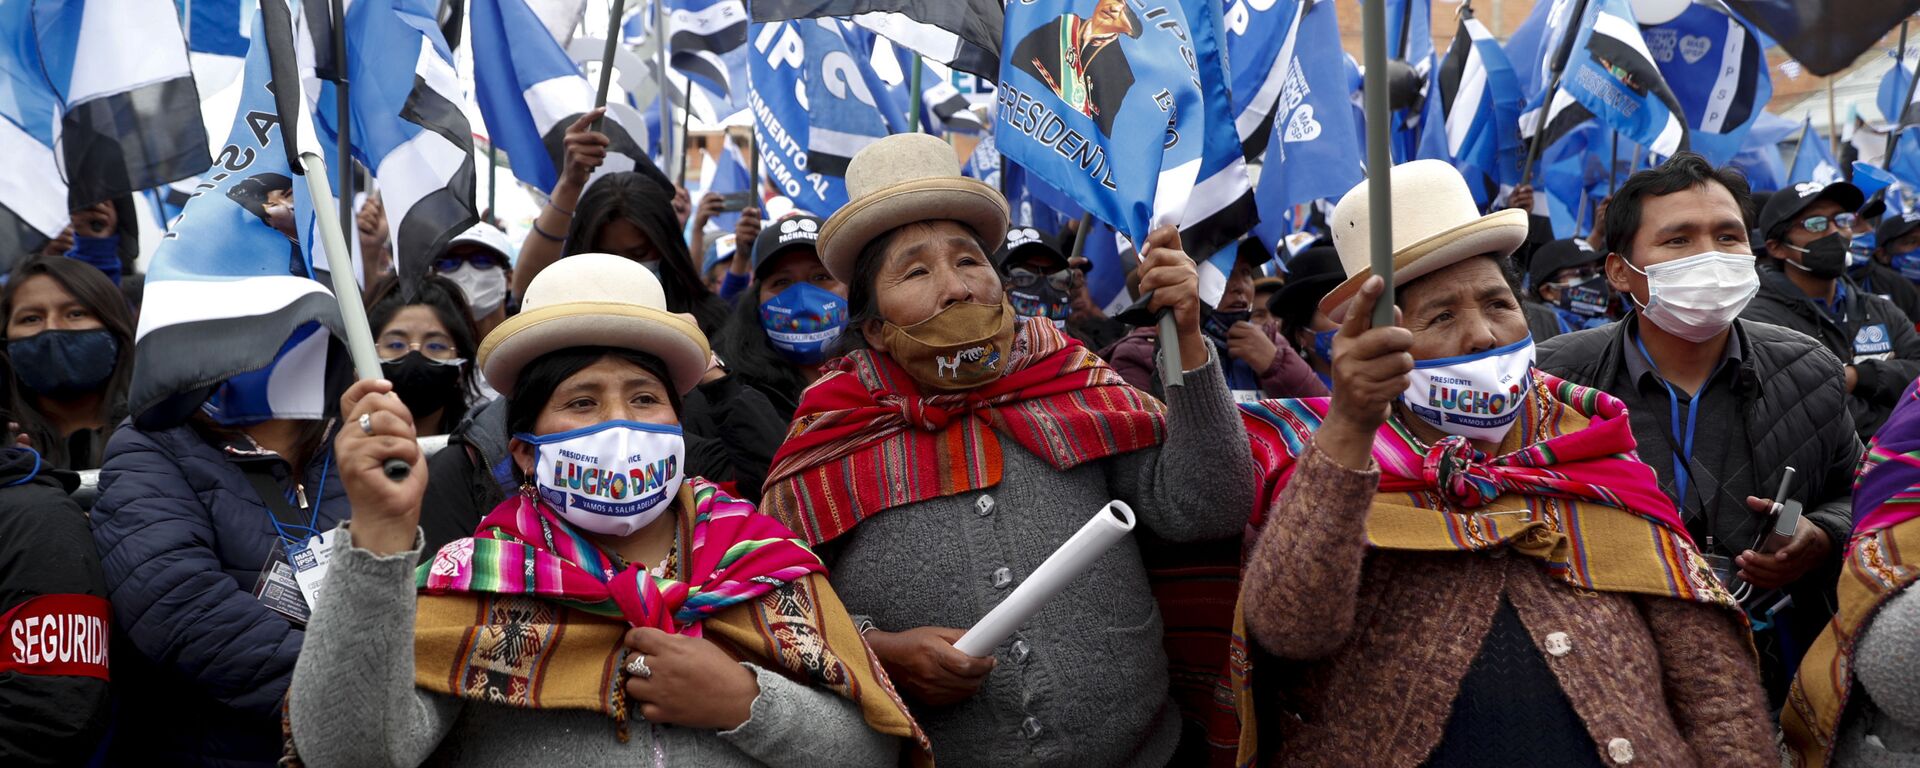 Simpatizantes del MAS en un acto en apoyo a Luis Arce. El Alto, 14 de octubre 2020 - Sputnik Mundo, 1920, 06.11.2020